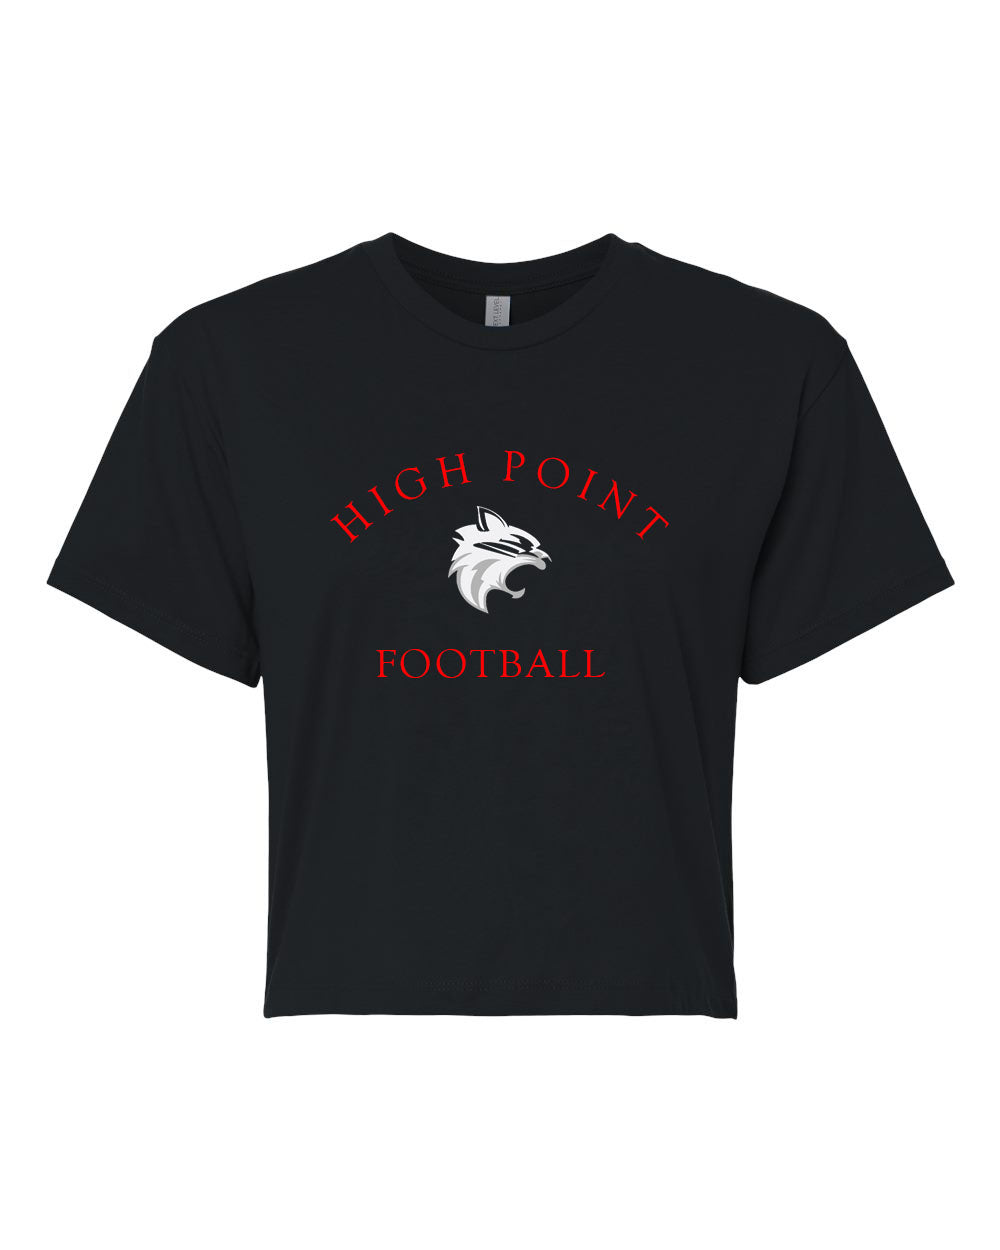 High point Football design 3 Crop Top